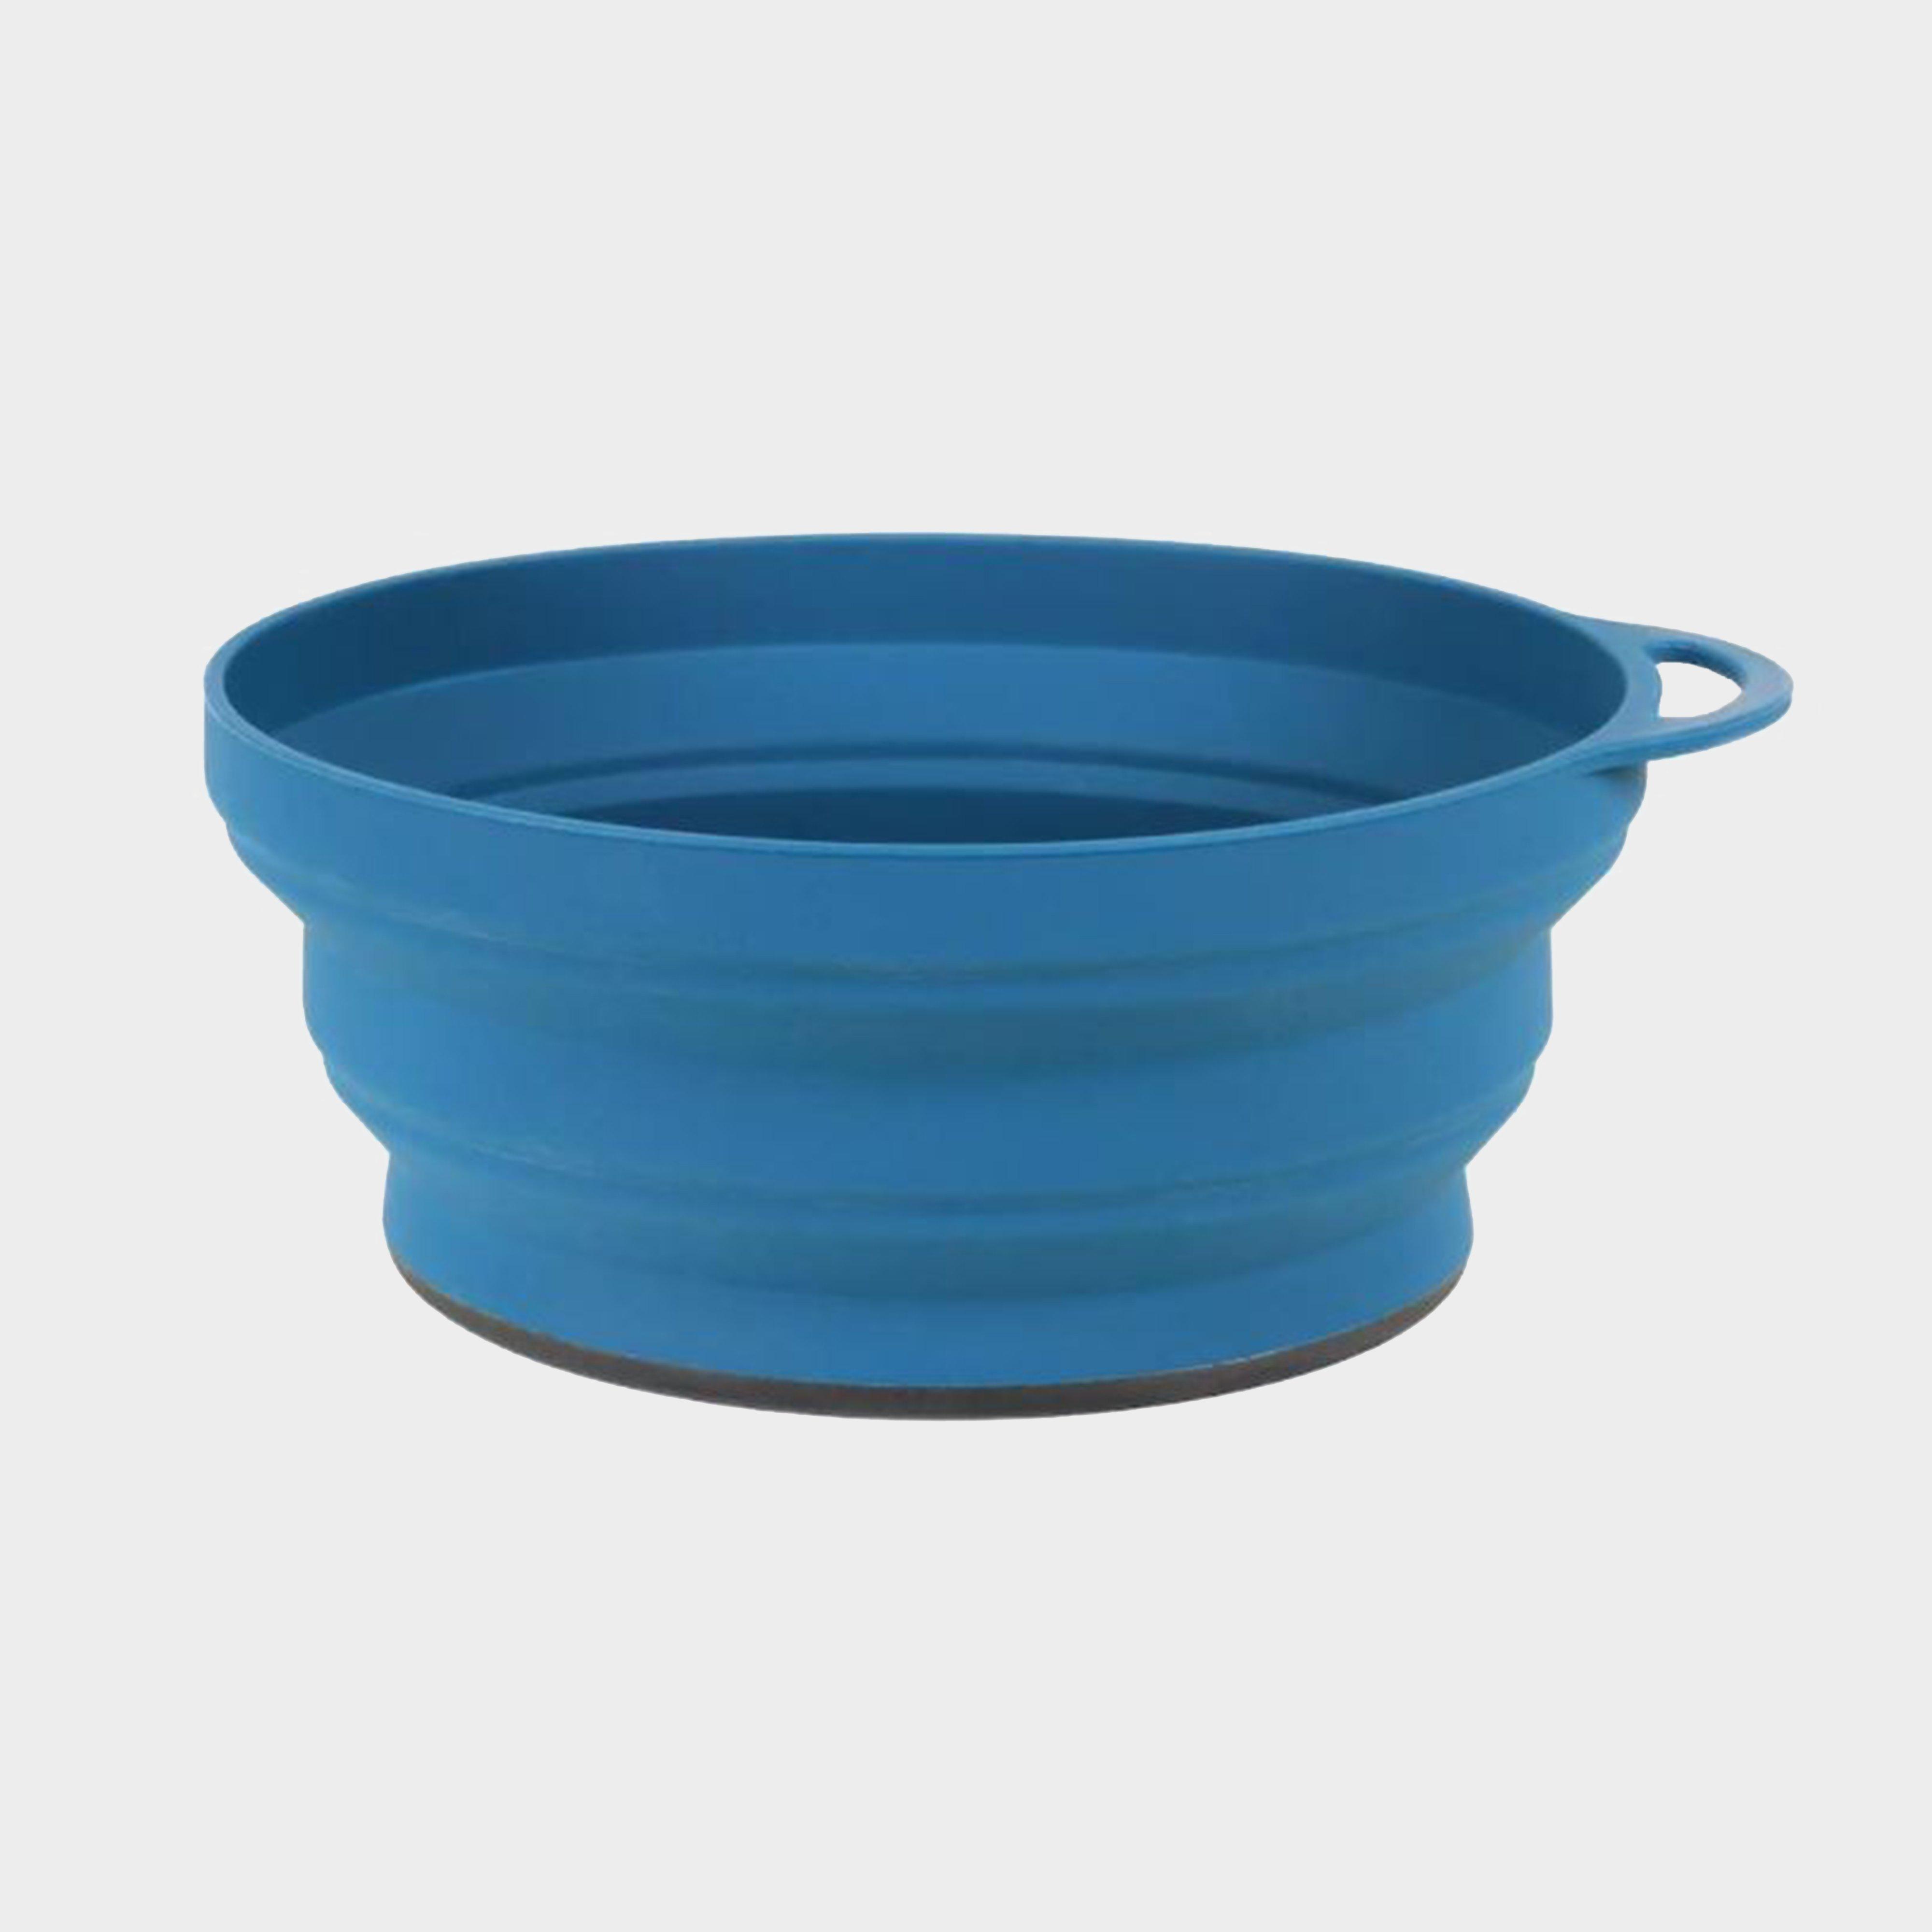 Ellipse Collapsible Bowl - Blue, Blue